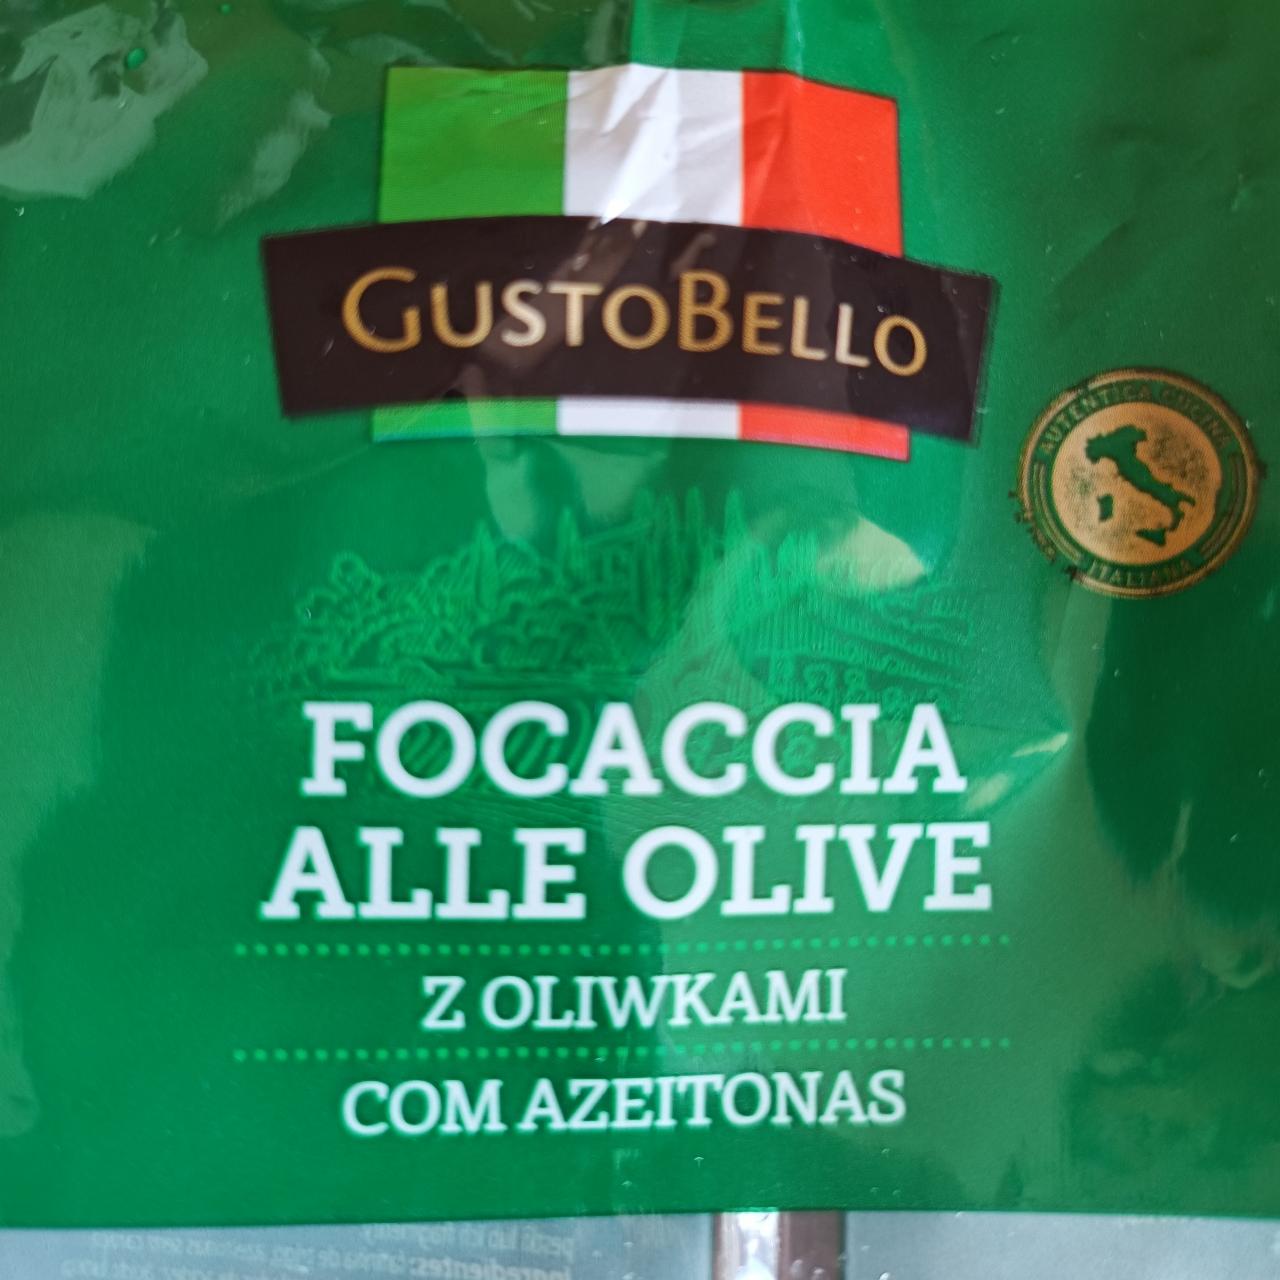 Zdjęcia - Focaccia z oliwkami GustoBello